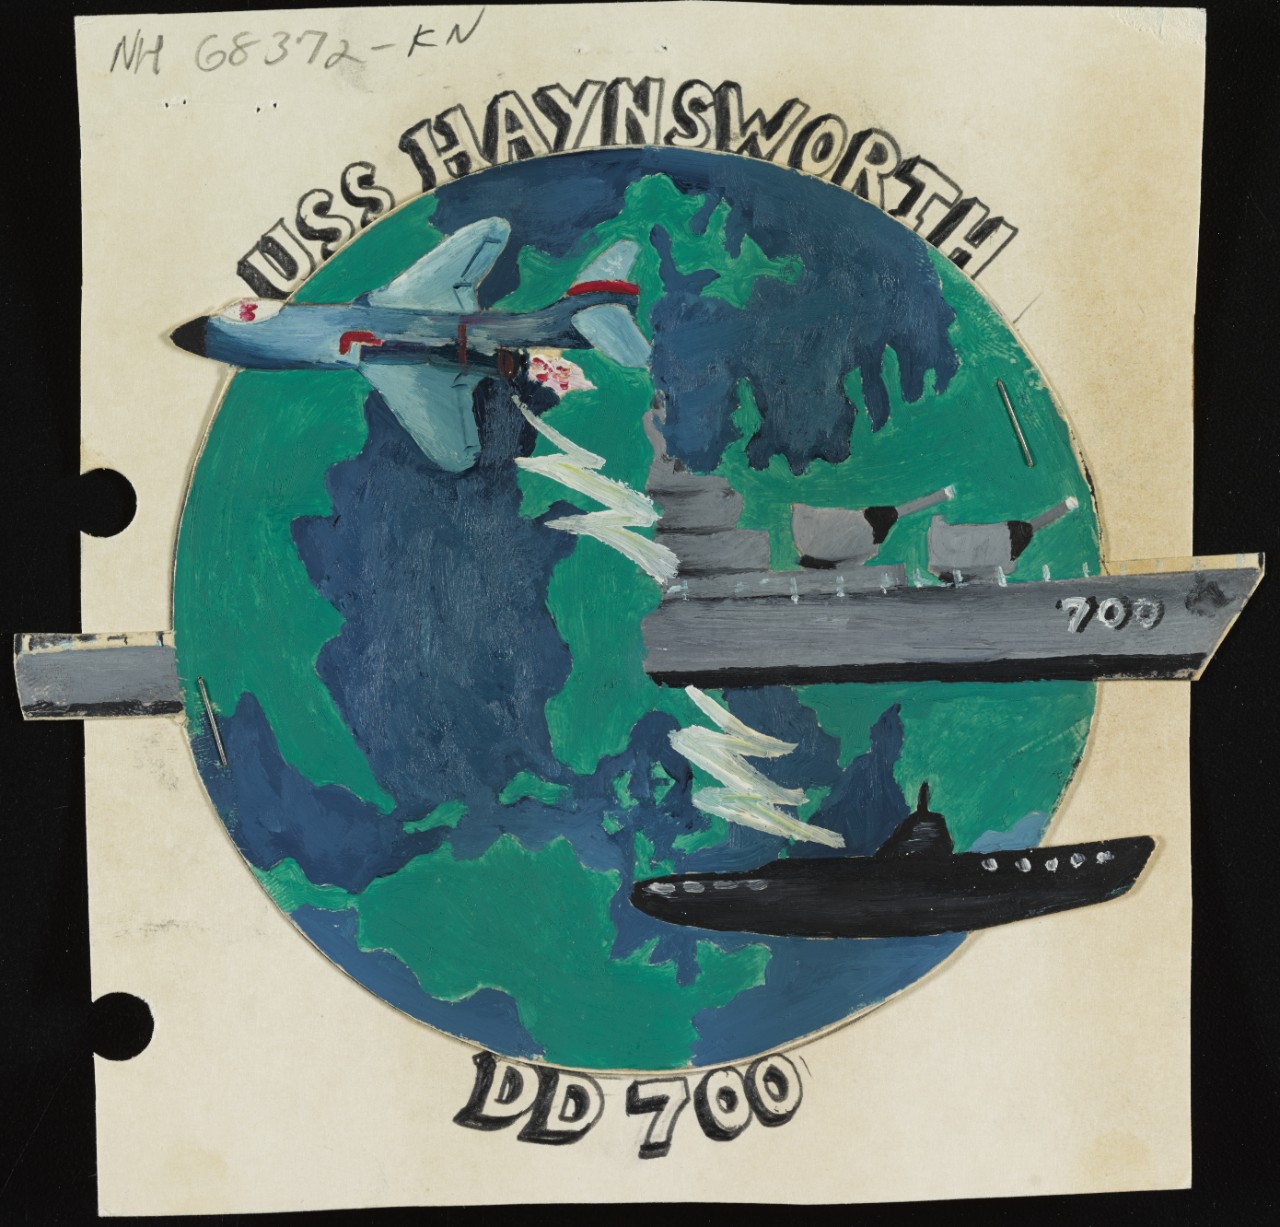 Insignia: USS HAYNSWORTH (DD-700)